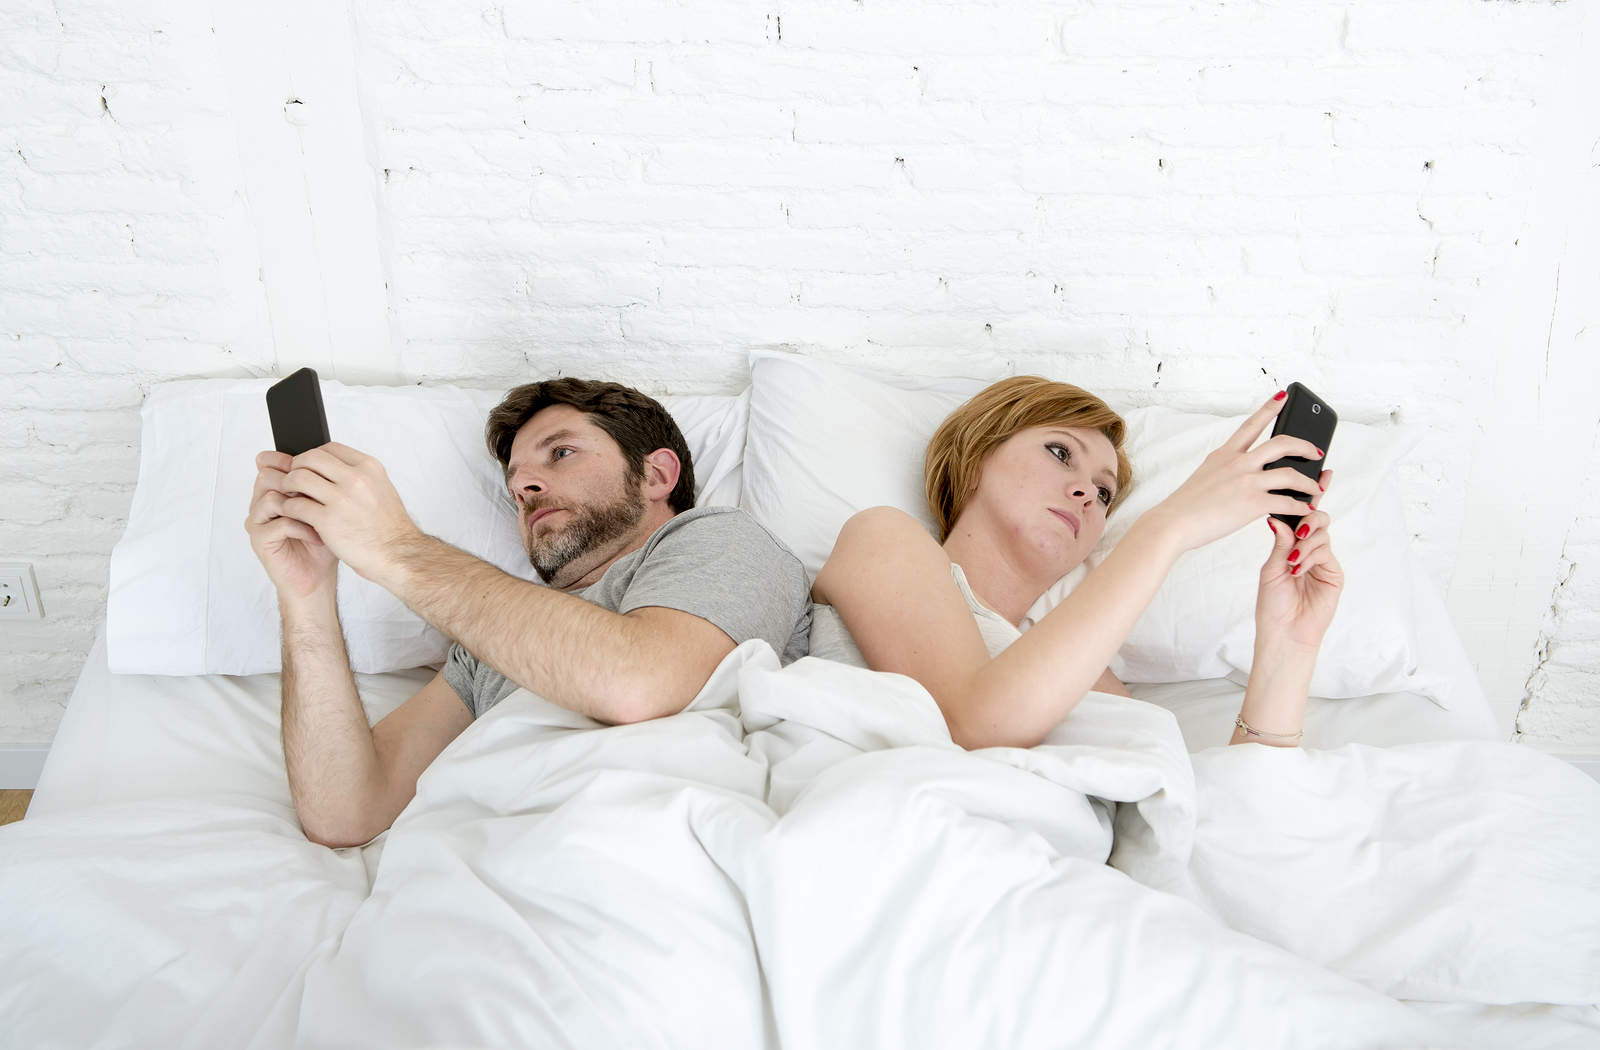 Горячая домохозяйка предложила мужу снять порно в собственной постели